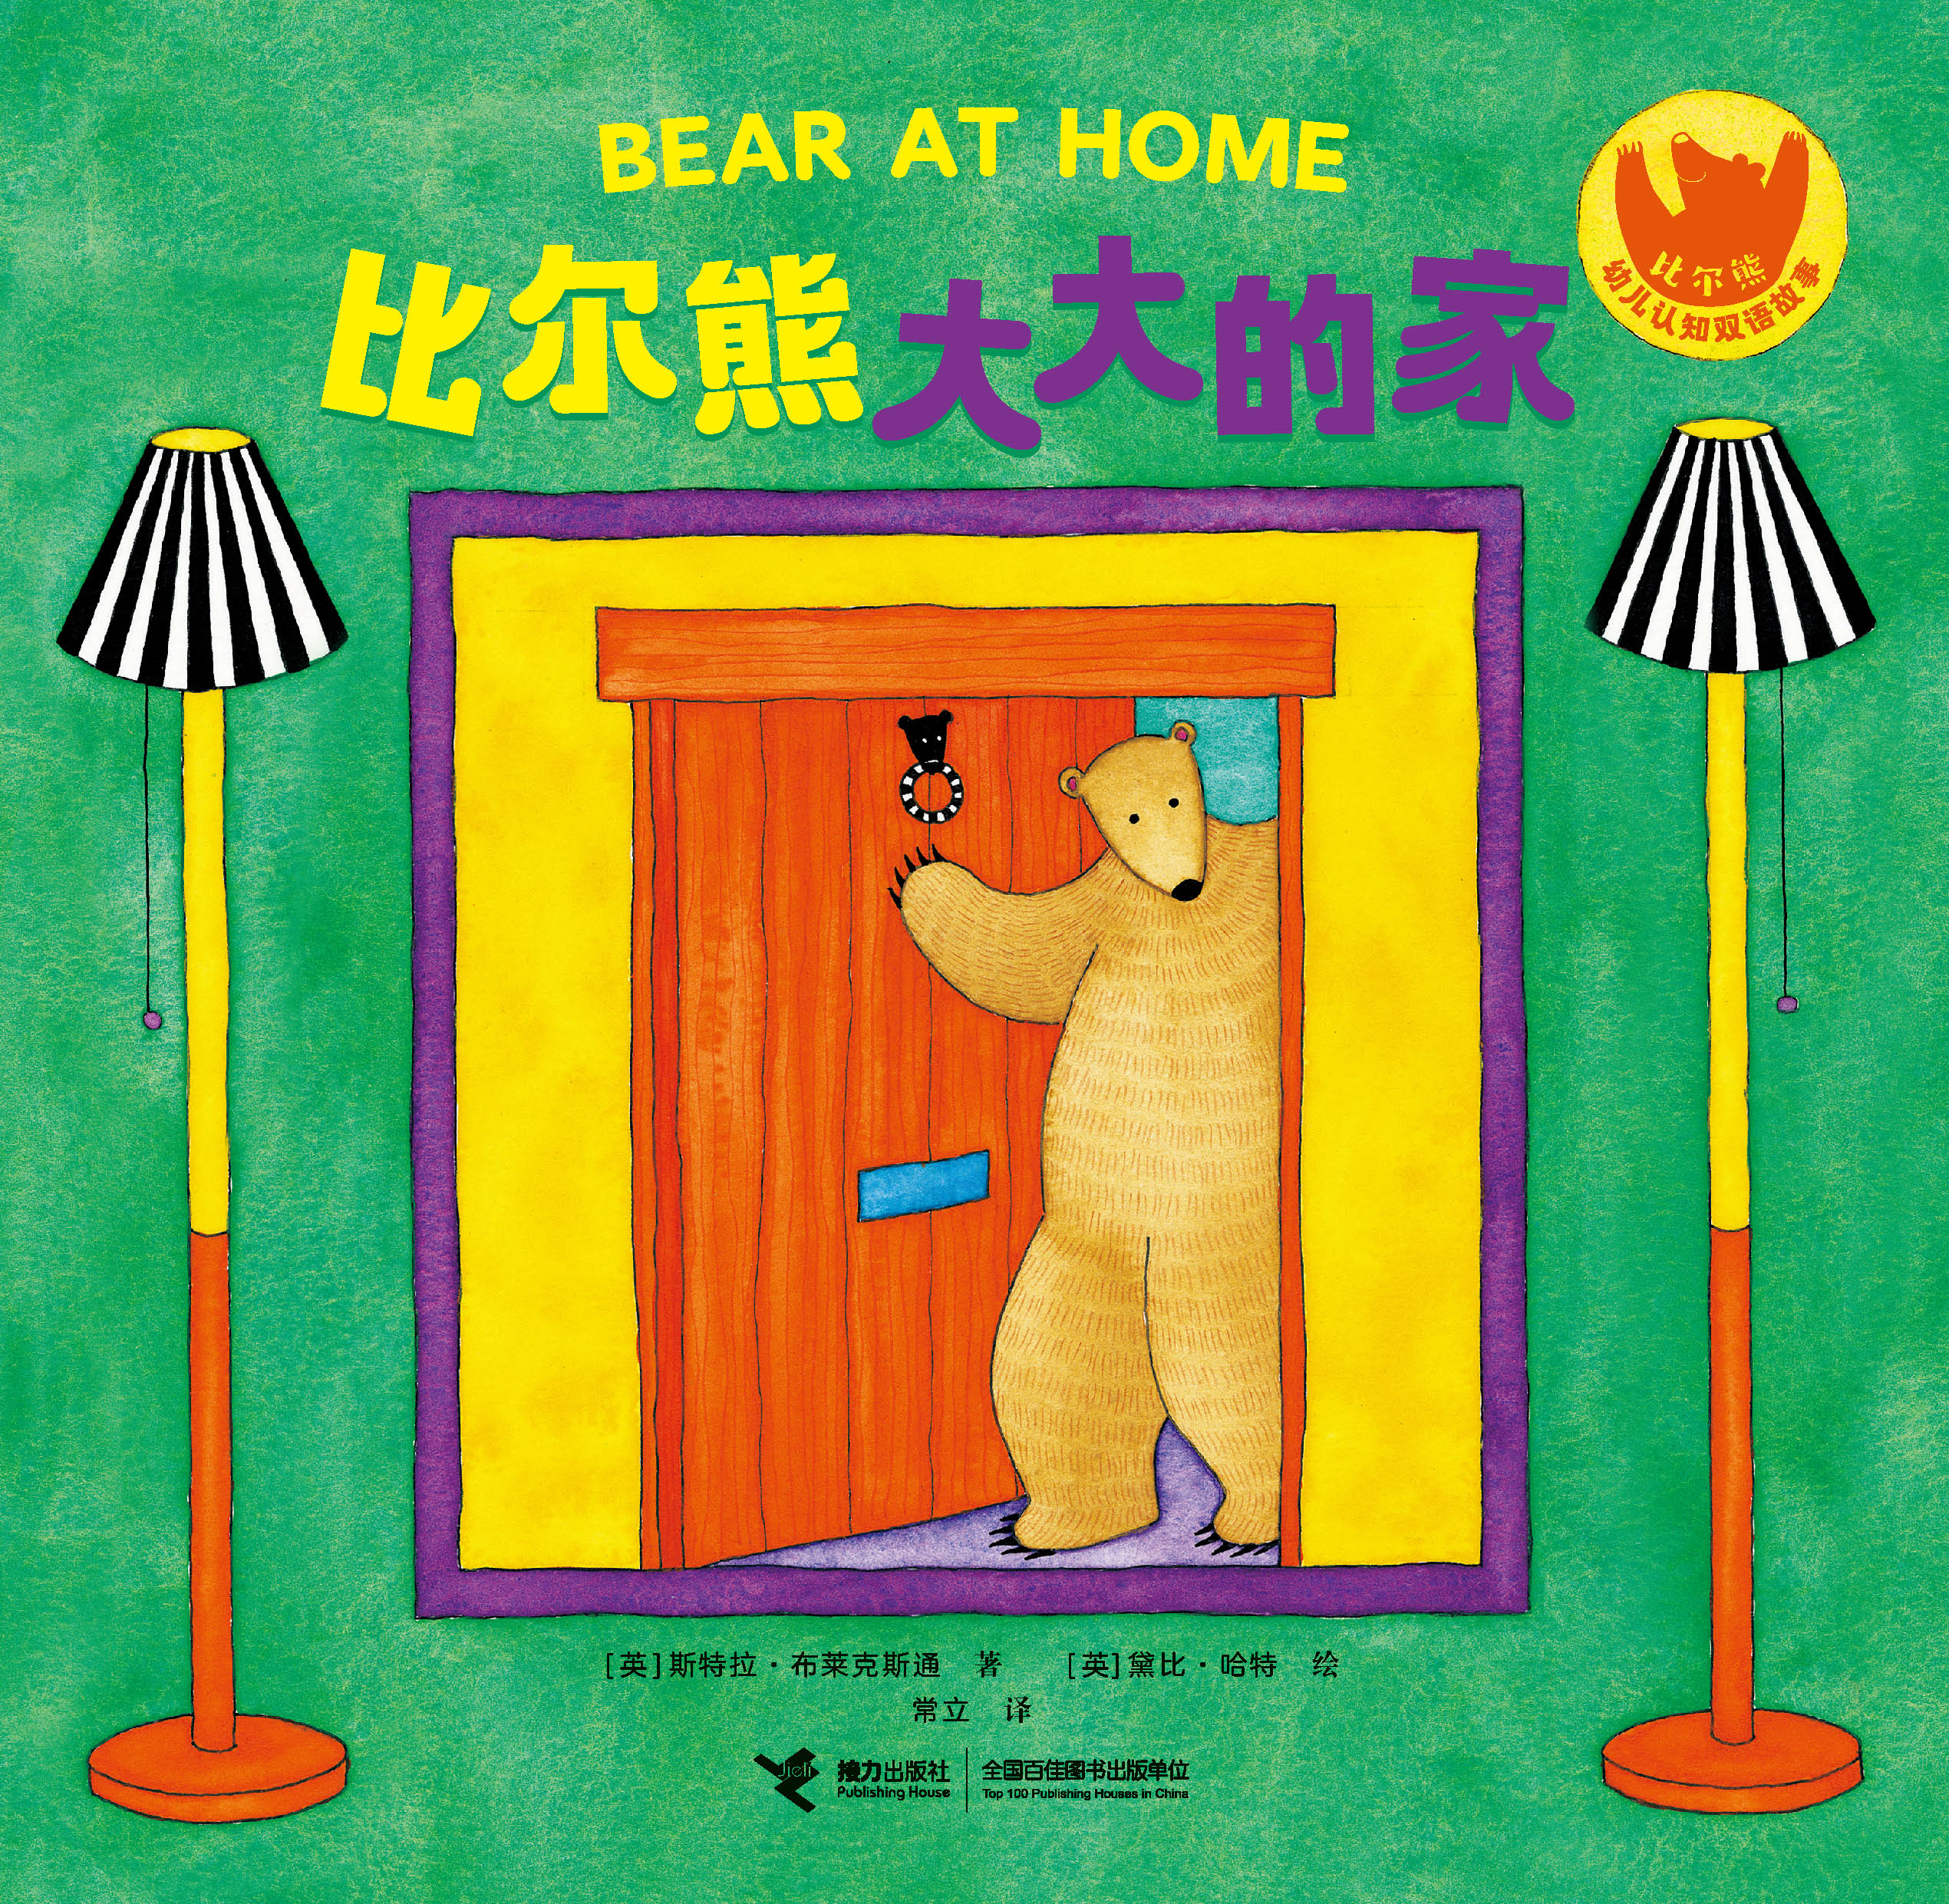 比尔熊幼儿认知双语故事:比尔熊幼儿认知双语故事.比尔熊大大的家：汉英对照